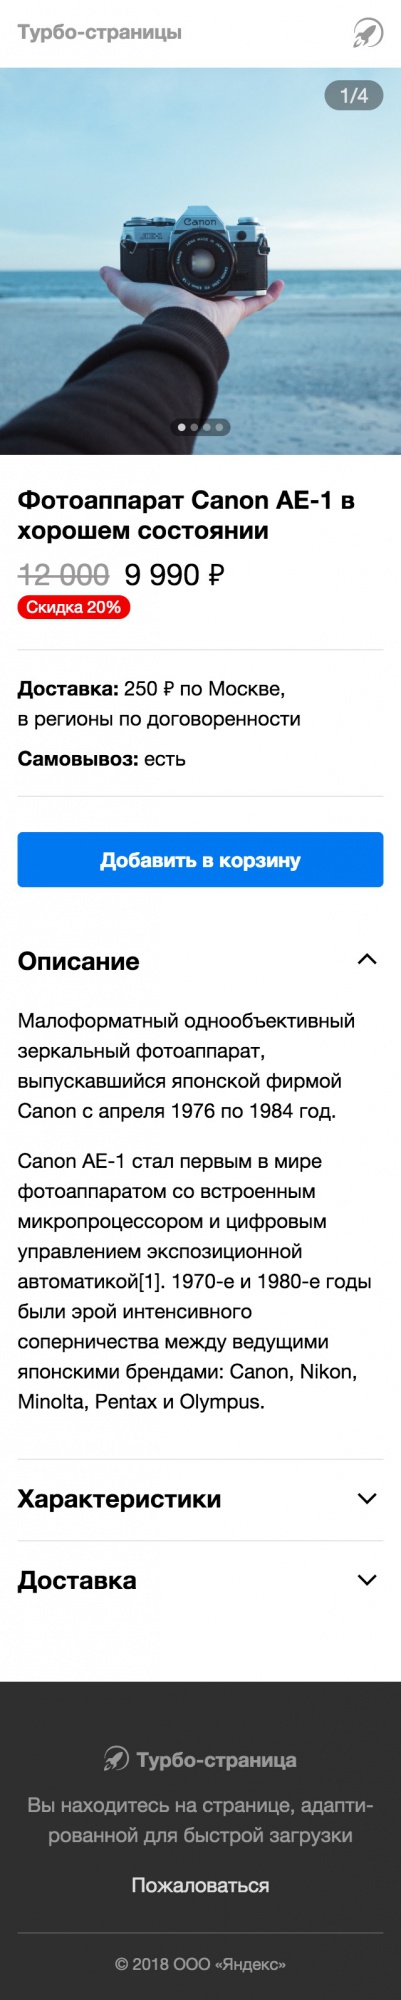 Яндекс запустил карточки товаров в формате Турбо